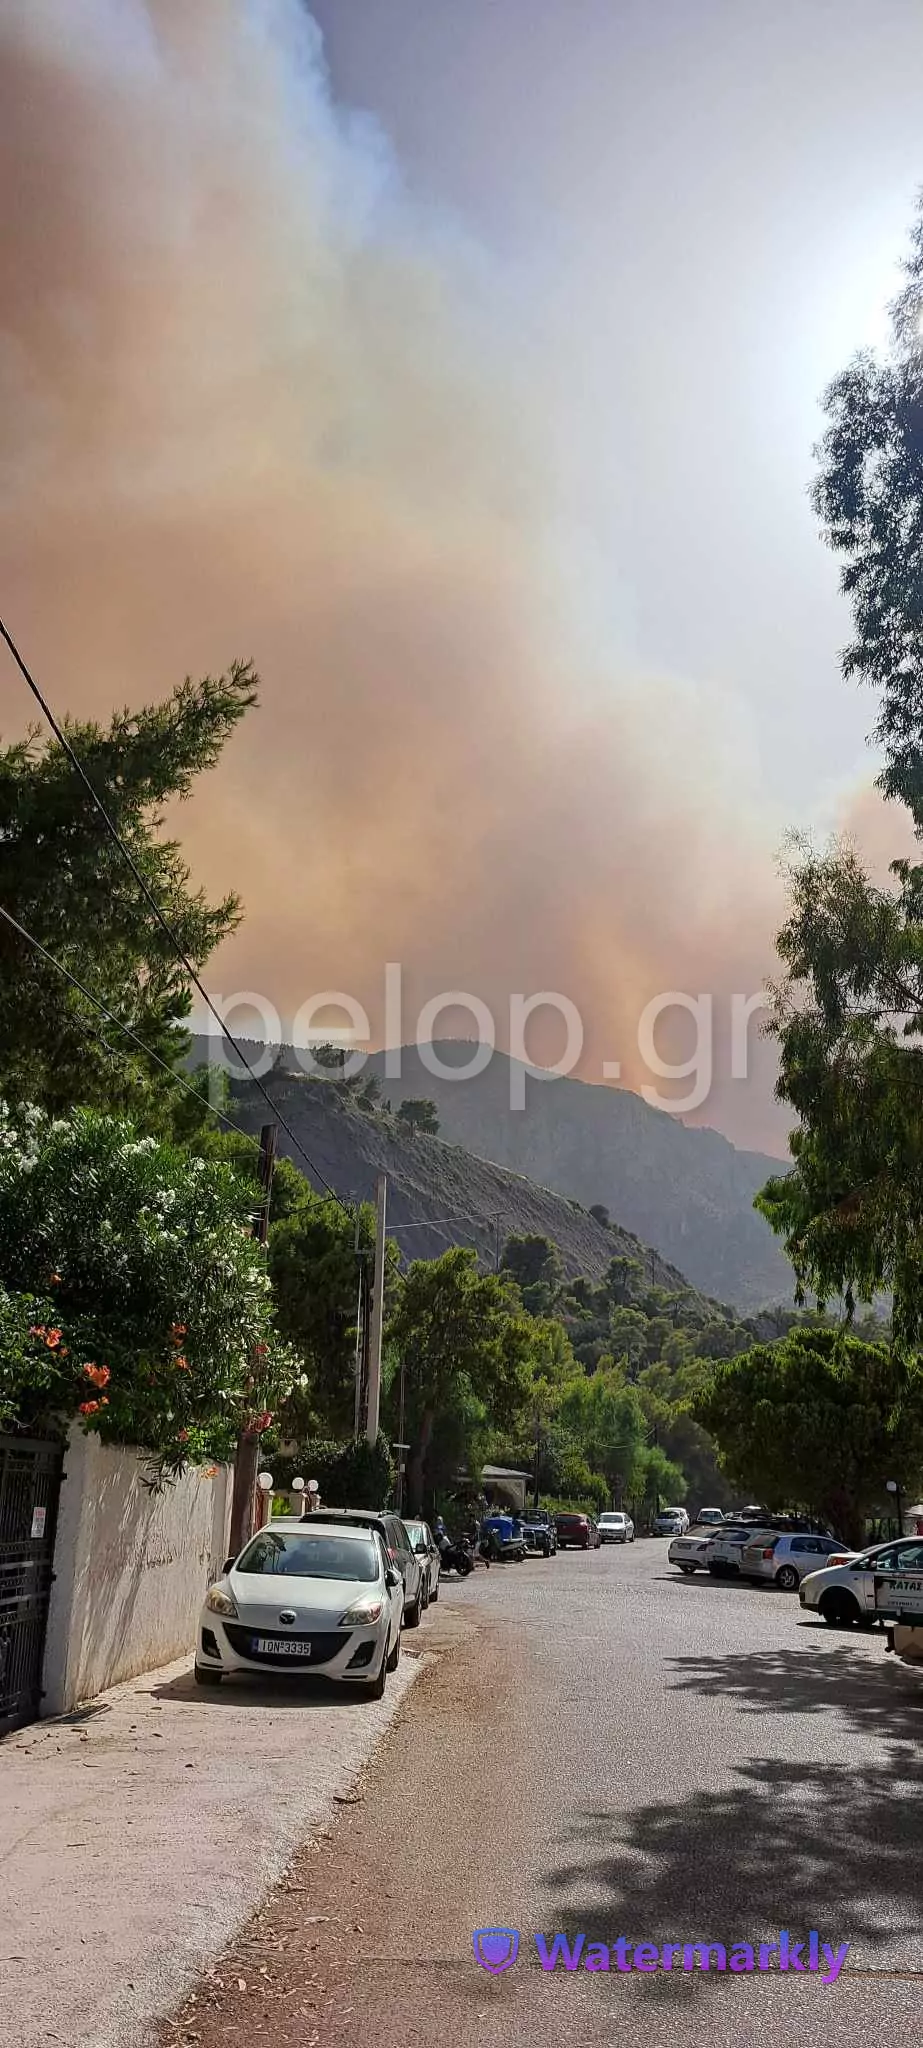 Φωτιά στην Αιγιάλεια: Εκκενώνονται οι οικισμοί Καθολικό και Κάστρο - Συνεχίζουν τη μάχη επίγειες και εναέριες δυνάμεις ΦΩΤΟ - ΒΙΝΤΕΟ